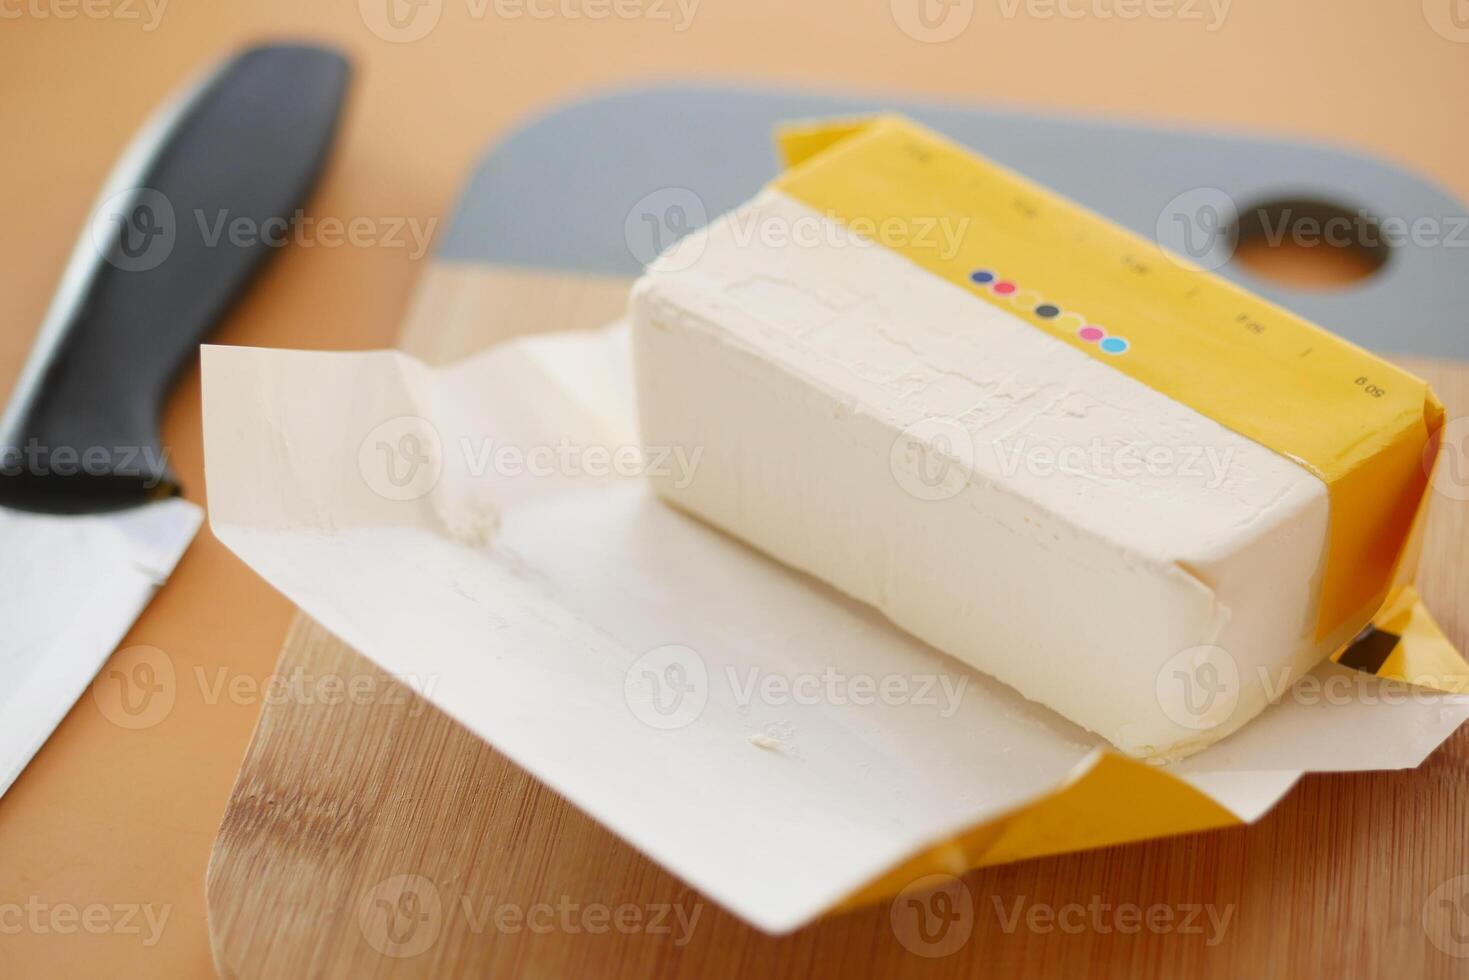 rebanada de mantequilla en un papel sobre la mesa foto